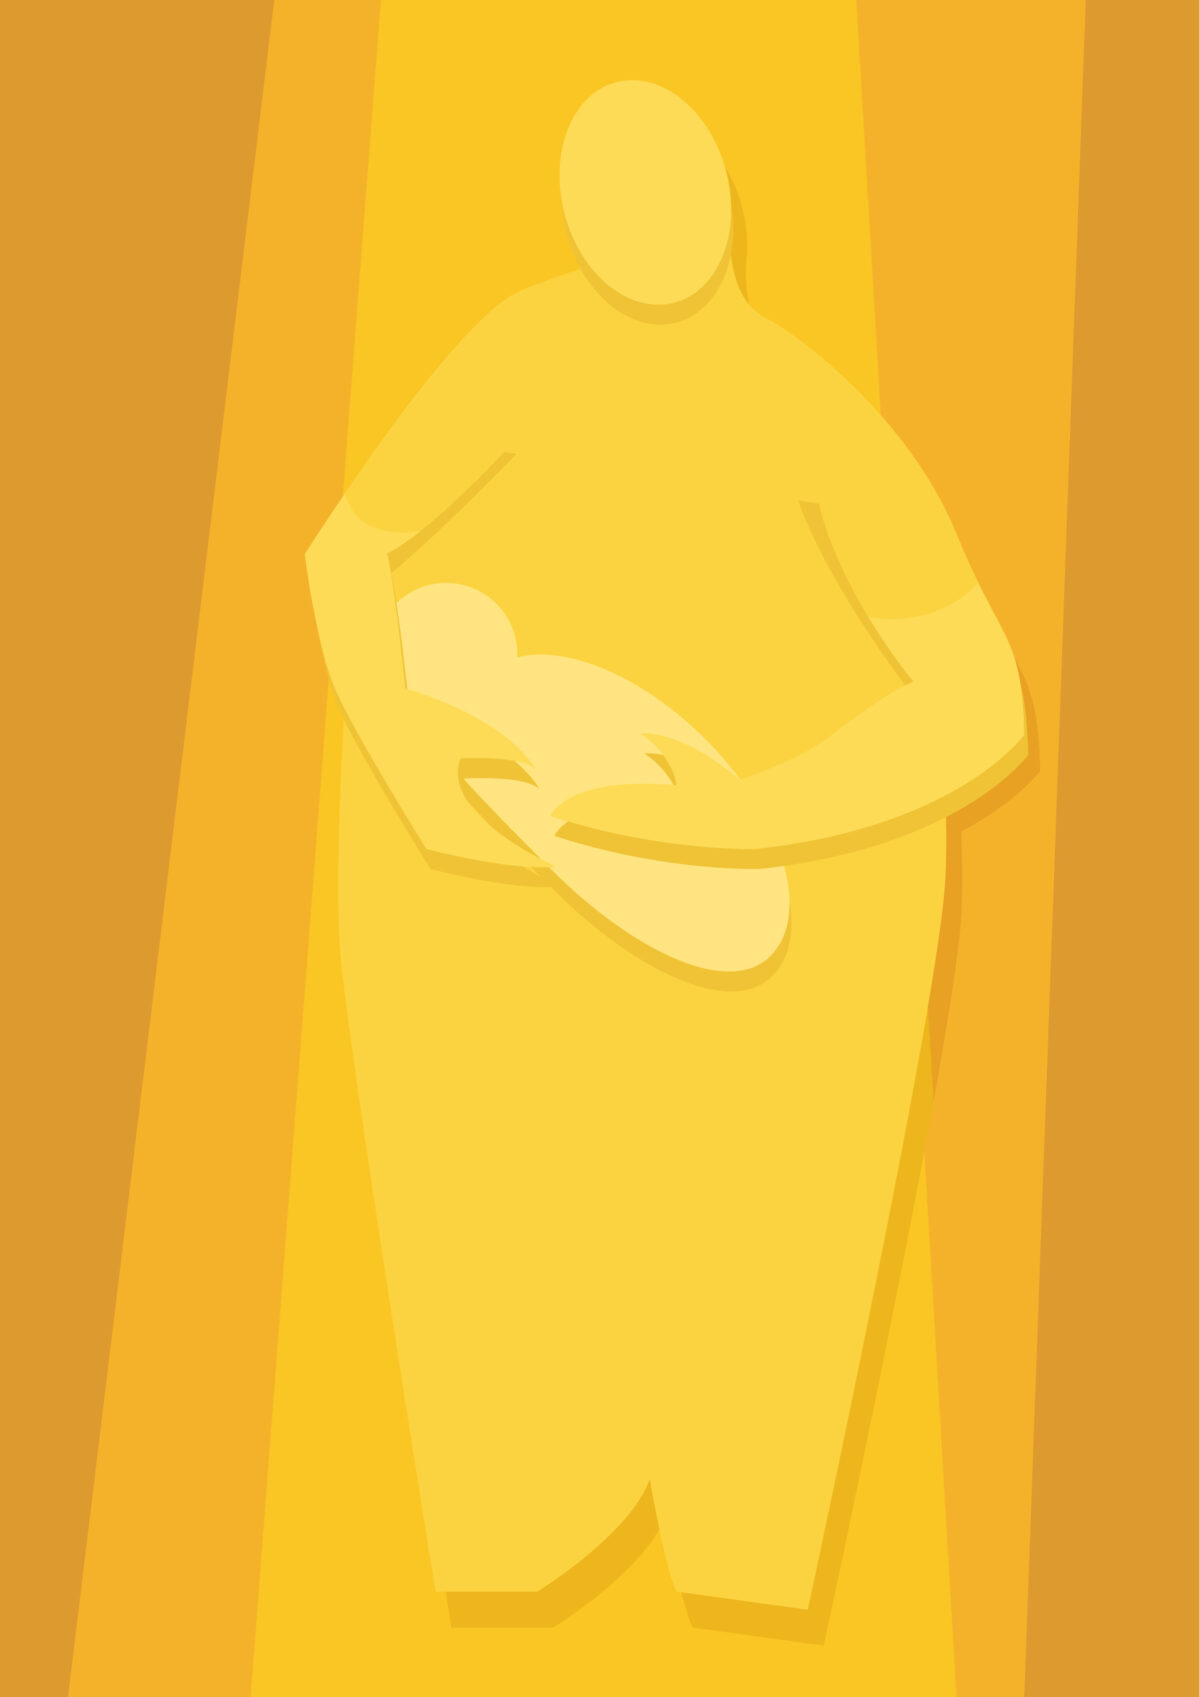 Grafik: Silhouette einer Person hält ein Neugeborenes in den Armen